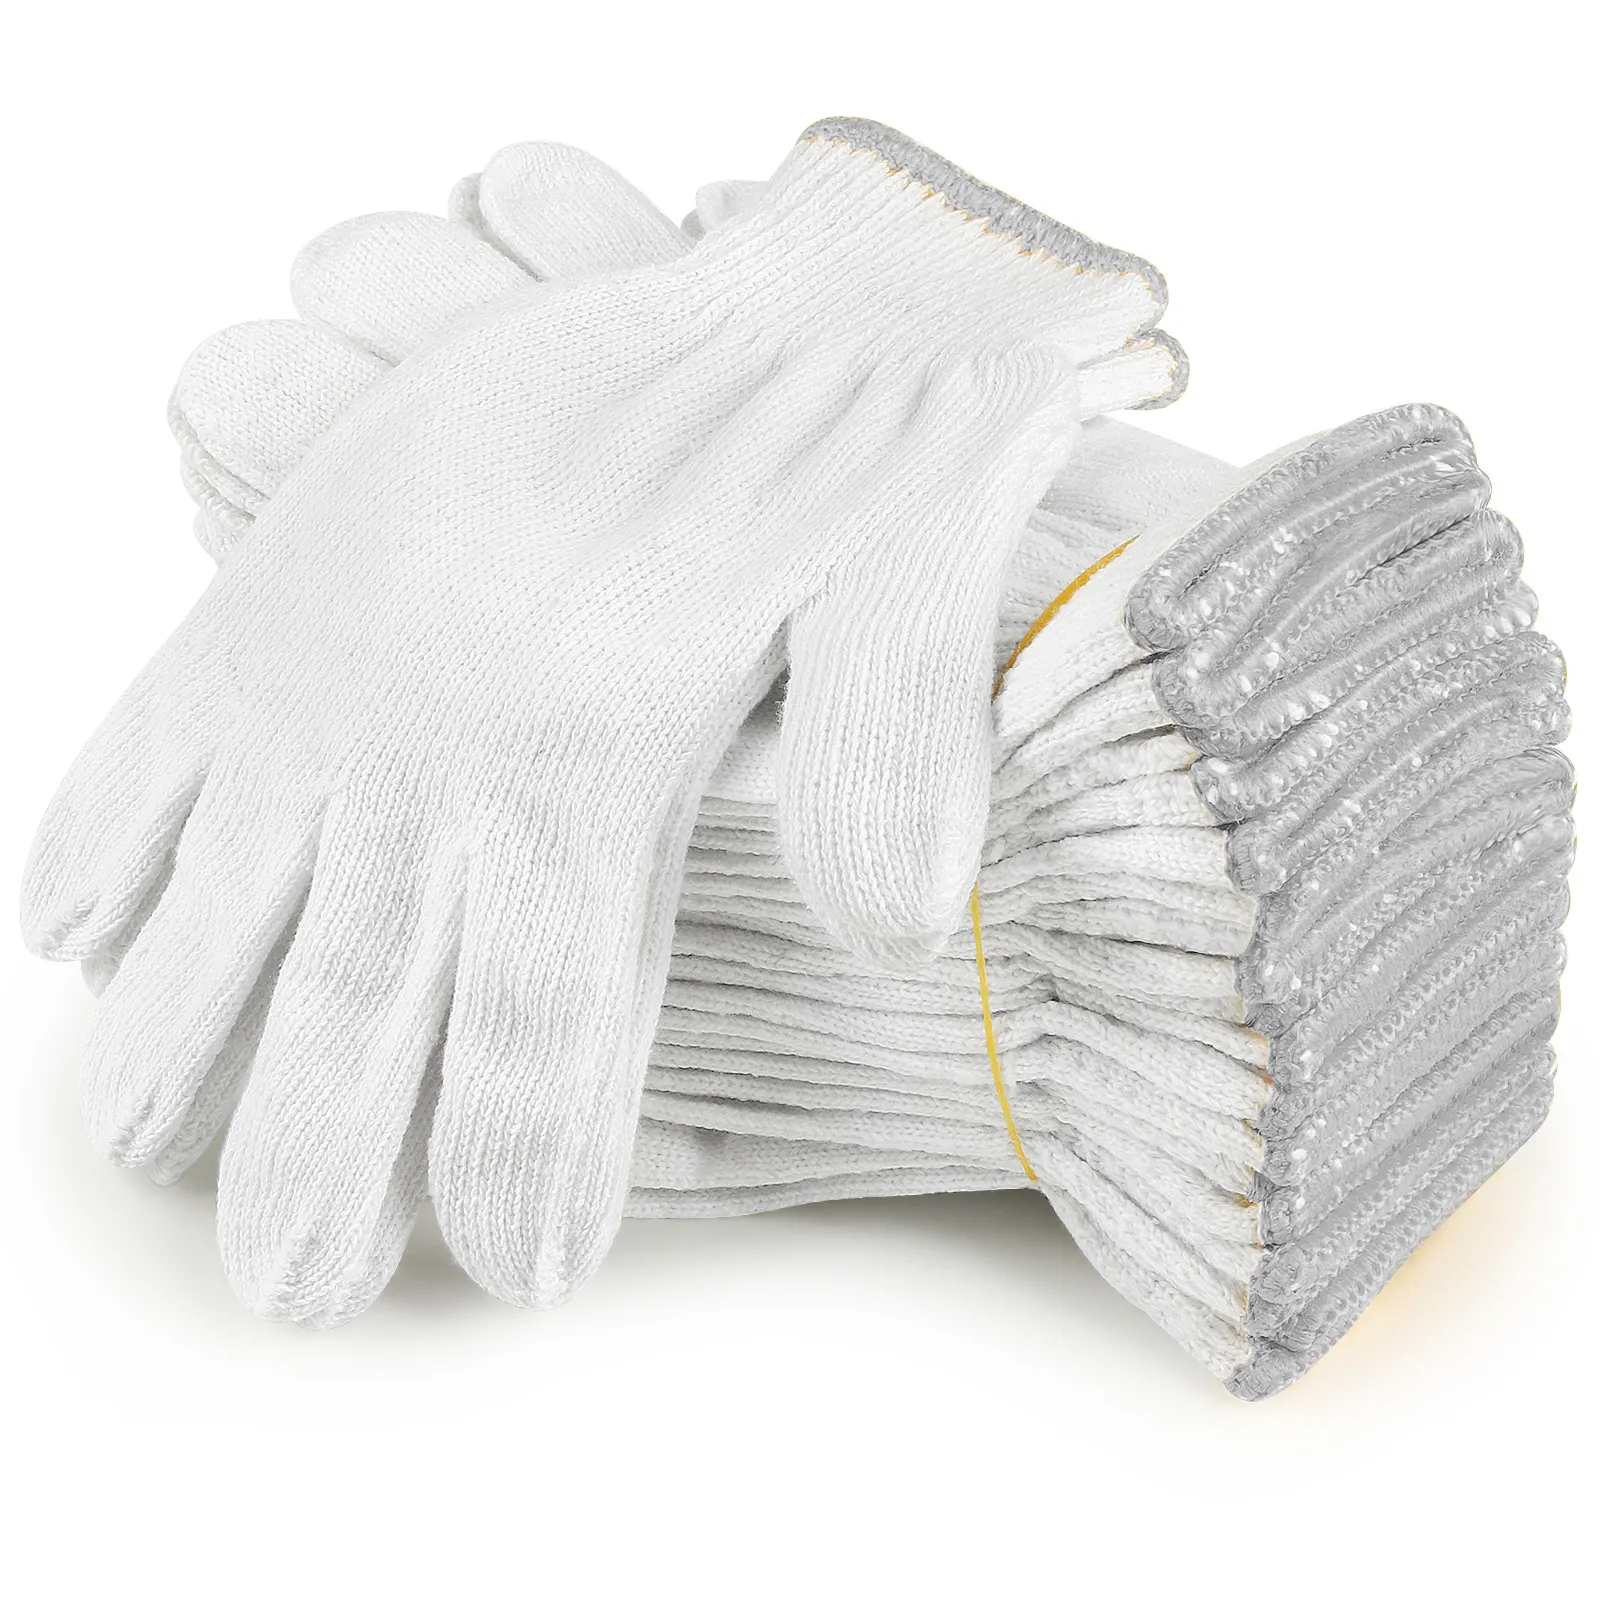 Gant tricoté en coton blanc naturel de calibre 7/10/blanc blanchi gants de sécurité confortables pour la prévention des mains